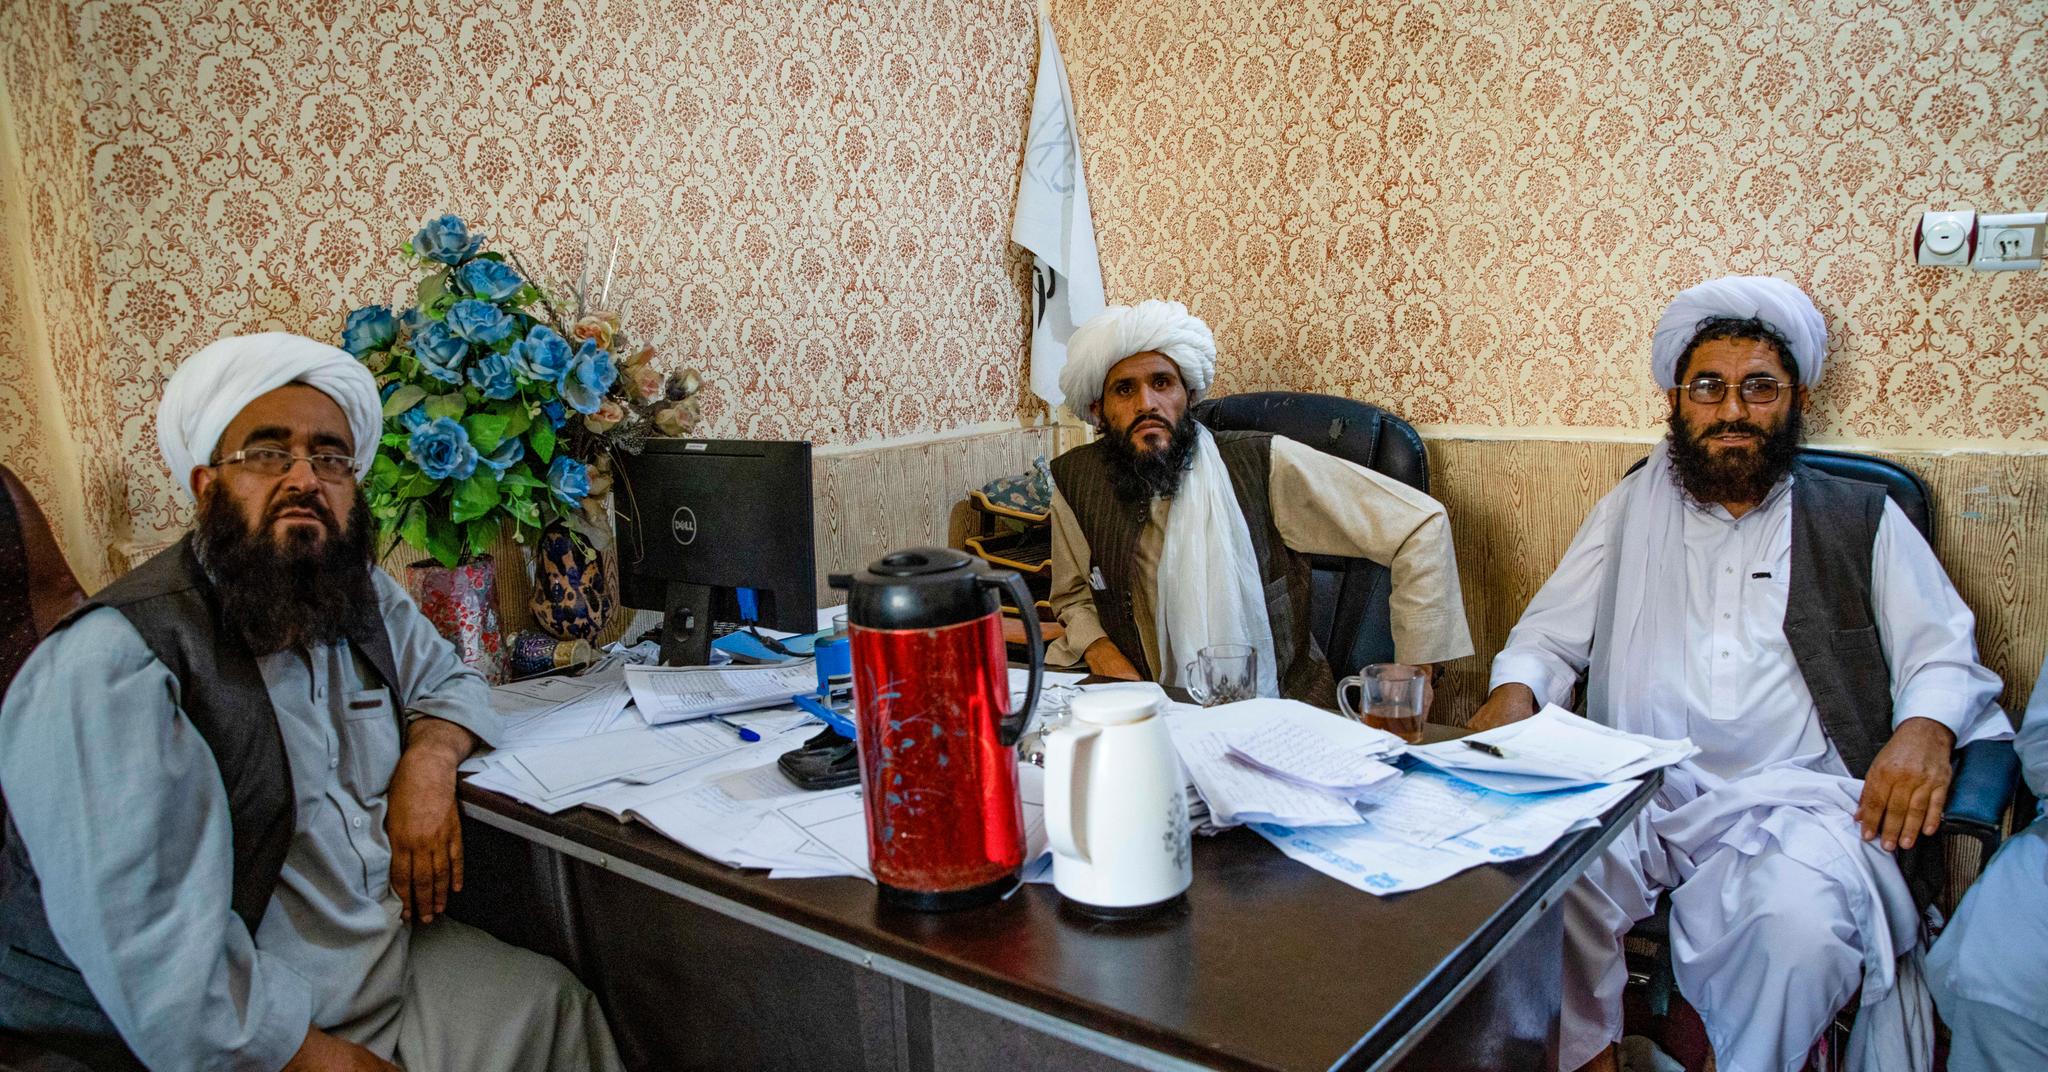 Dommer Abdul Hai (i midten) er sjefen ved Talibans nye domstol i Herat. Han har med seg en ekspert på koranen og en assistent som fungerer både som sekretær og dommer.